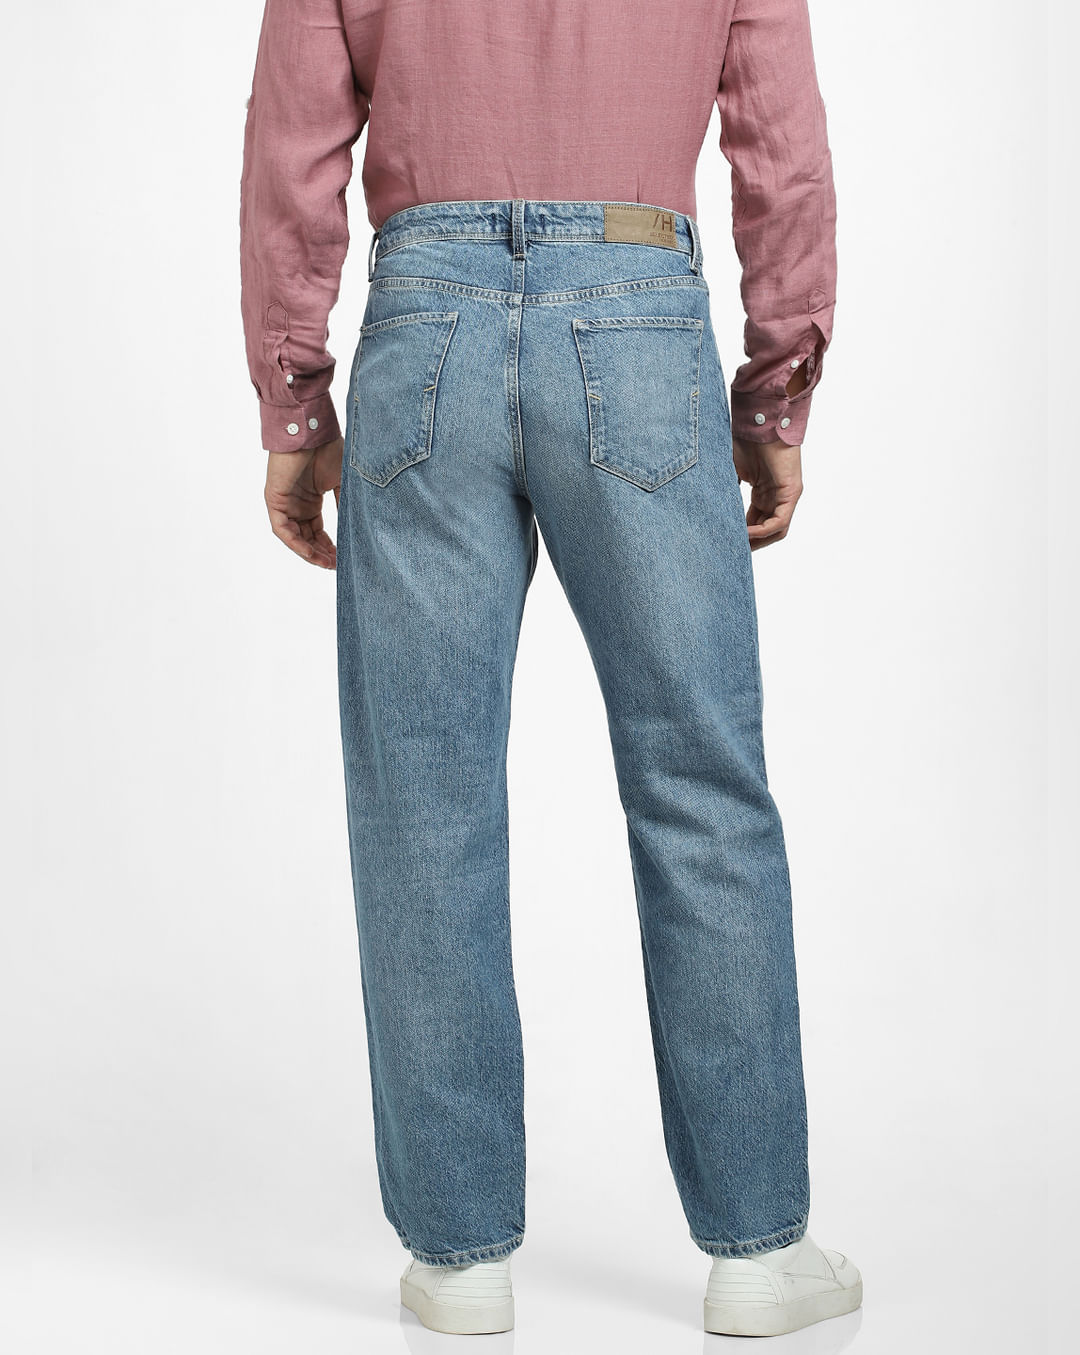 Jeans Loose Fit para Homem, Nova Coleção Online